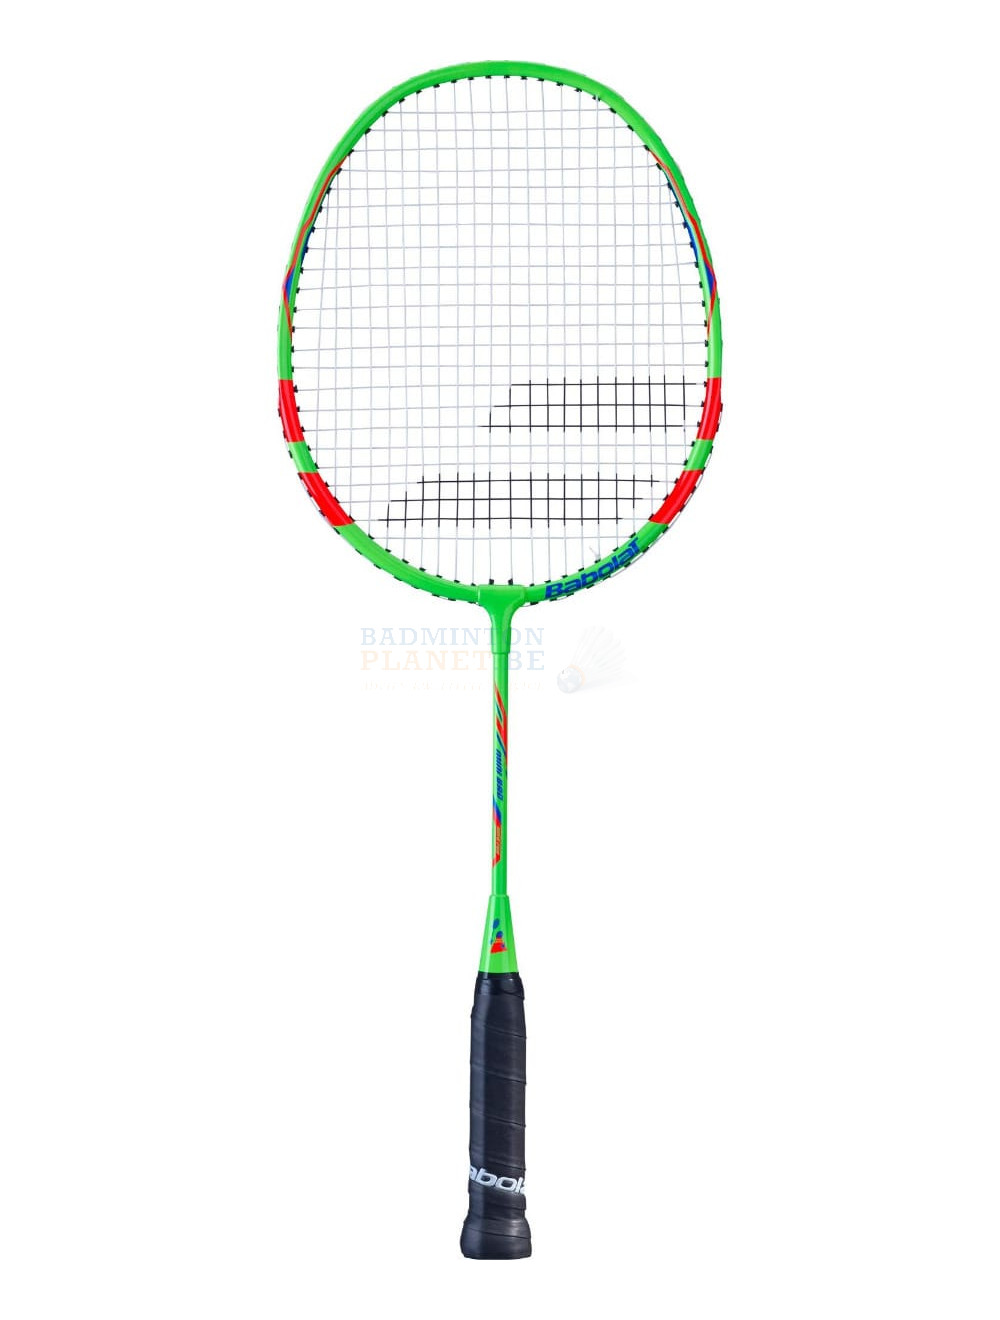 financieel Trouw moeilijk tevreden te krijgen Babolat Minibad badmintonracket kopen? - Badmintonplanet.be